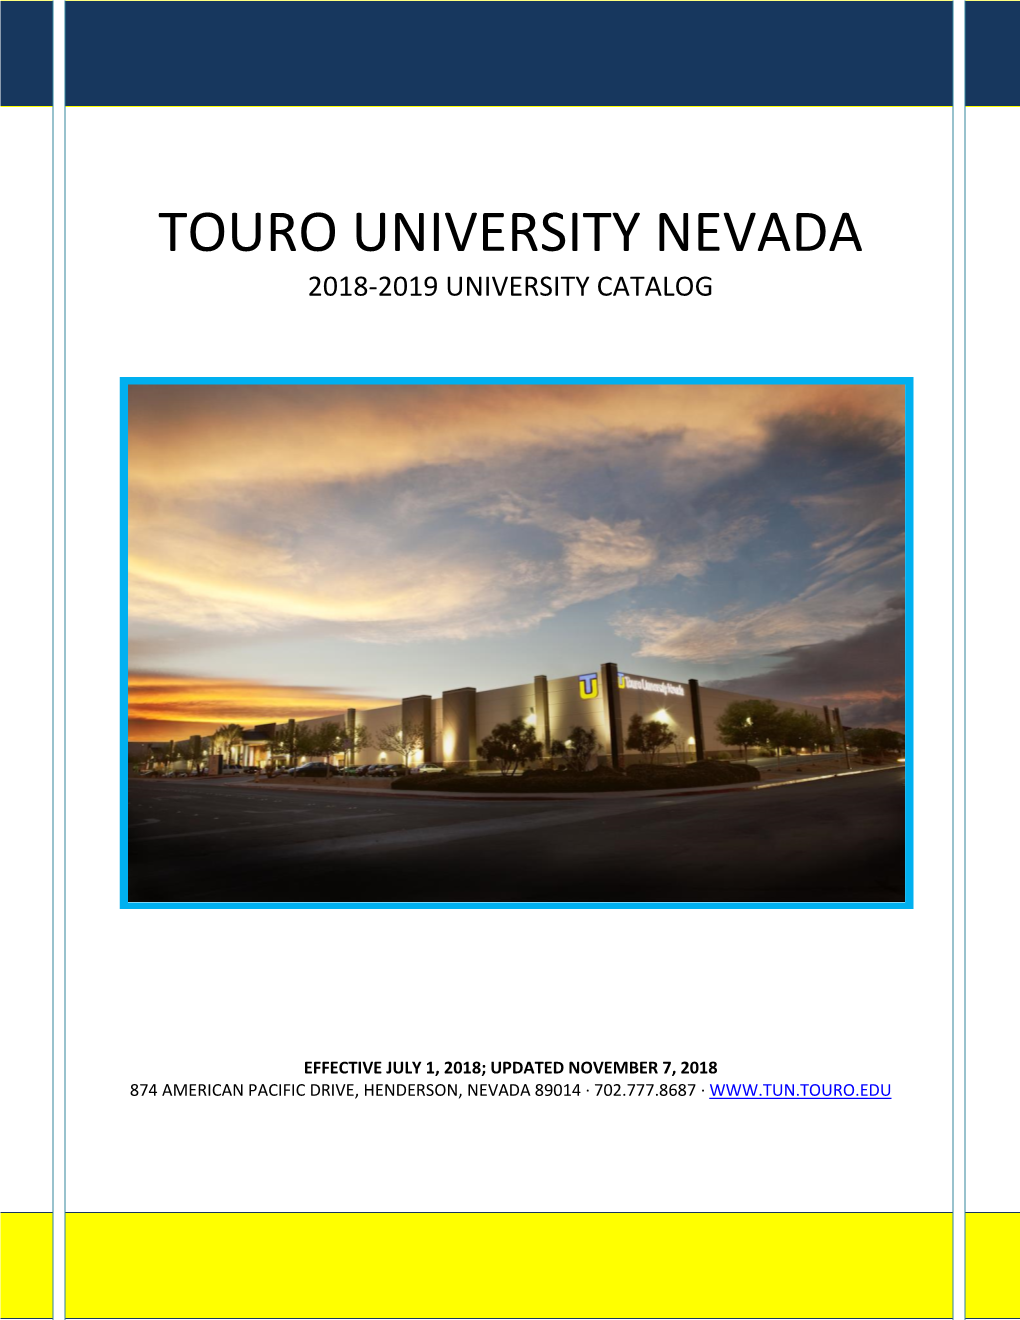 Touro University Nevada 2018-2019 University Catalog